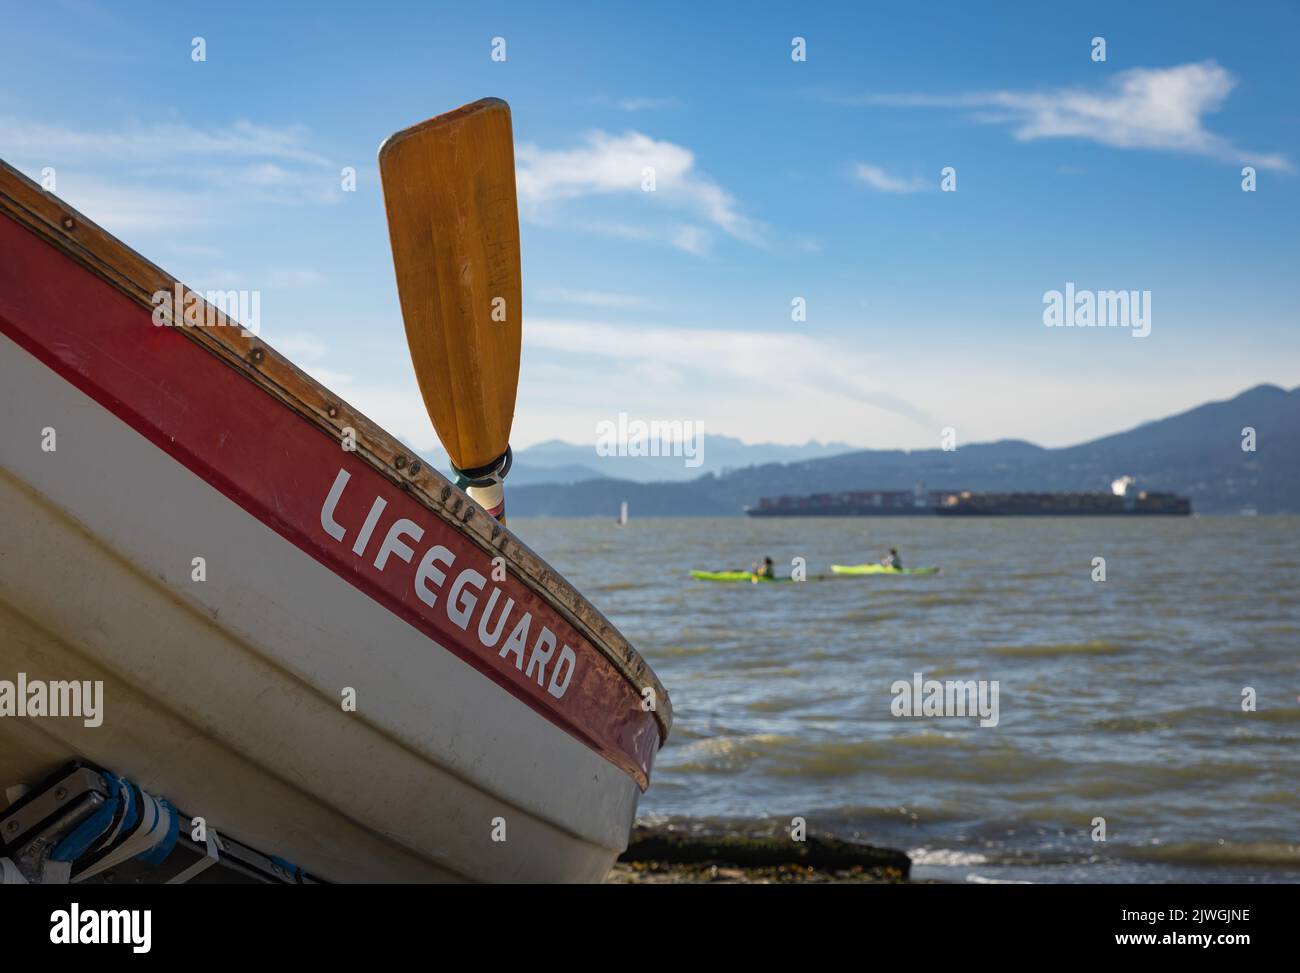 Rettungsschwimmer Boot am Strand. Vancouver BC. Blick auf den schönen Strand mit Rettungsboot. Reisefoto, Platz für Text kopieren, Stockfoto